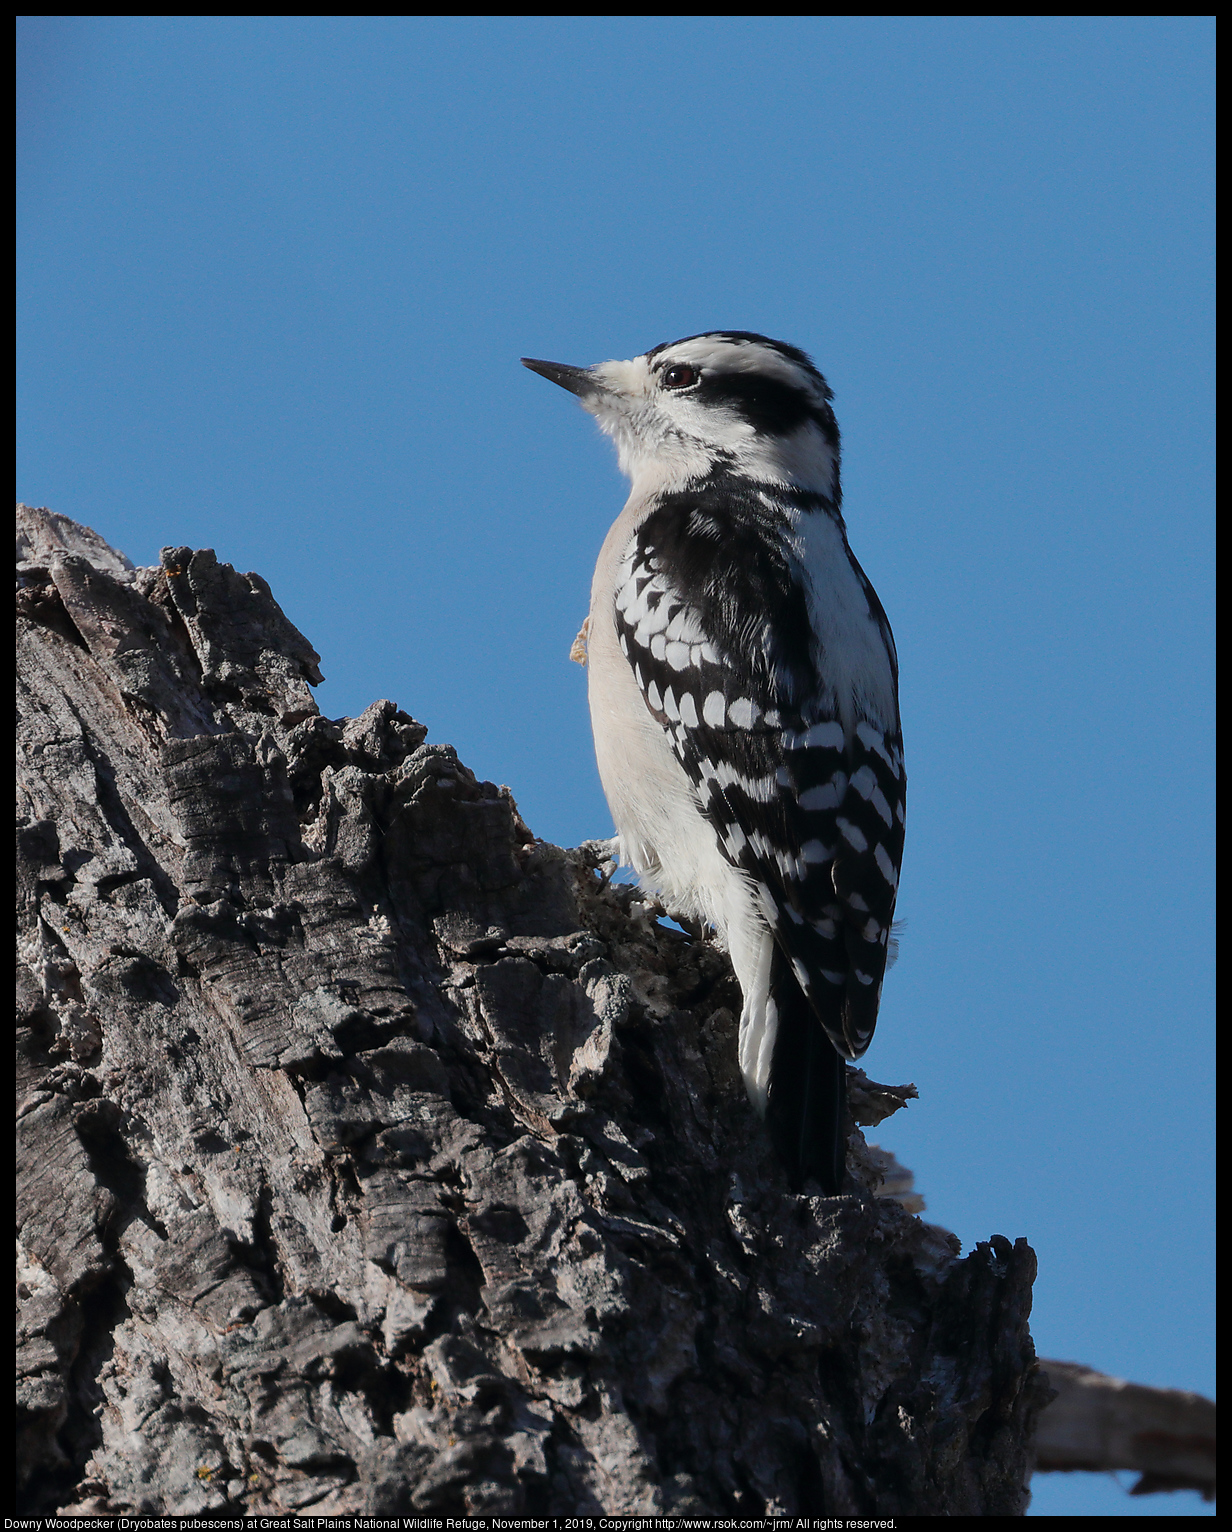 Downy Woodpecker (Dryobates pubescens) at Great Salt Plains National Wildlife Refuge, November 1, 2019